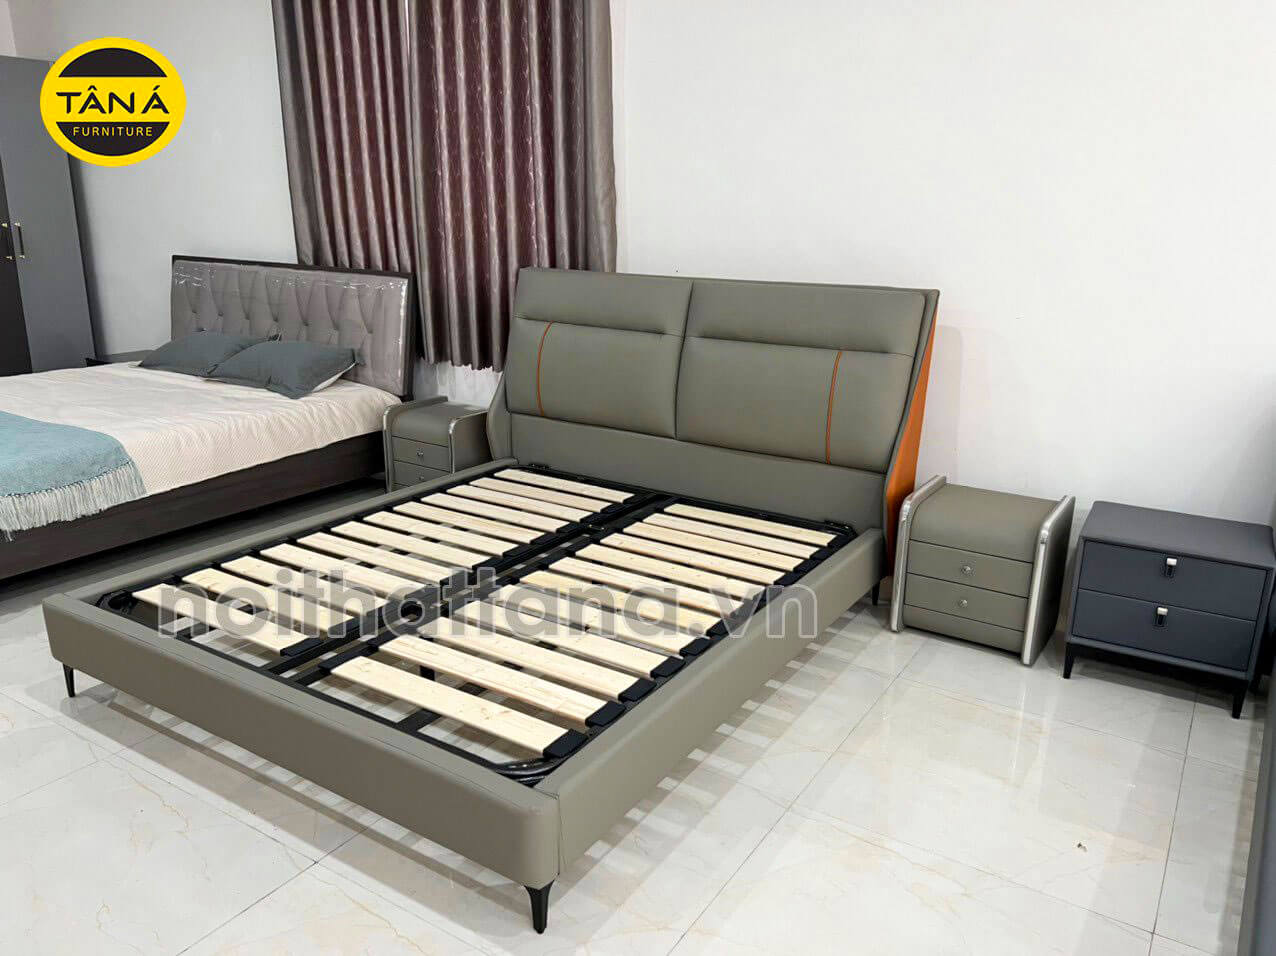 Mua giường ngủ gỗ sồi nhập khẩu giá rẻ tại tphcm